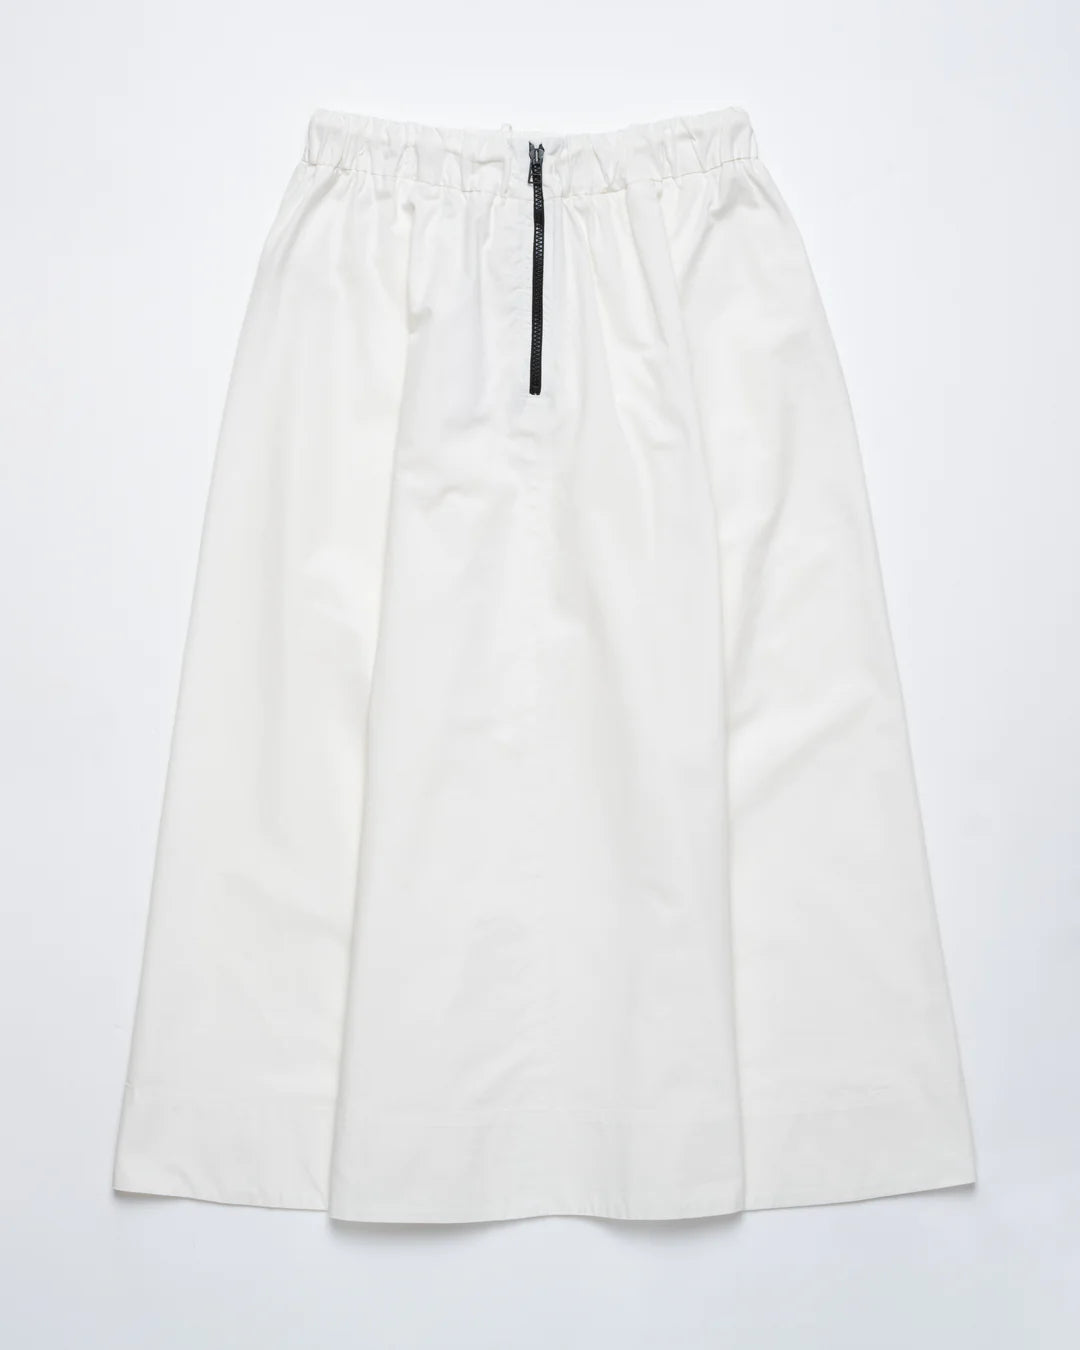 
                  
                    Meadow Skirt Light Cotton Drill - Milk
                  
                